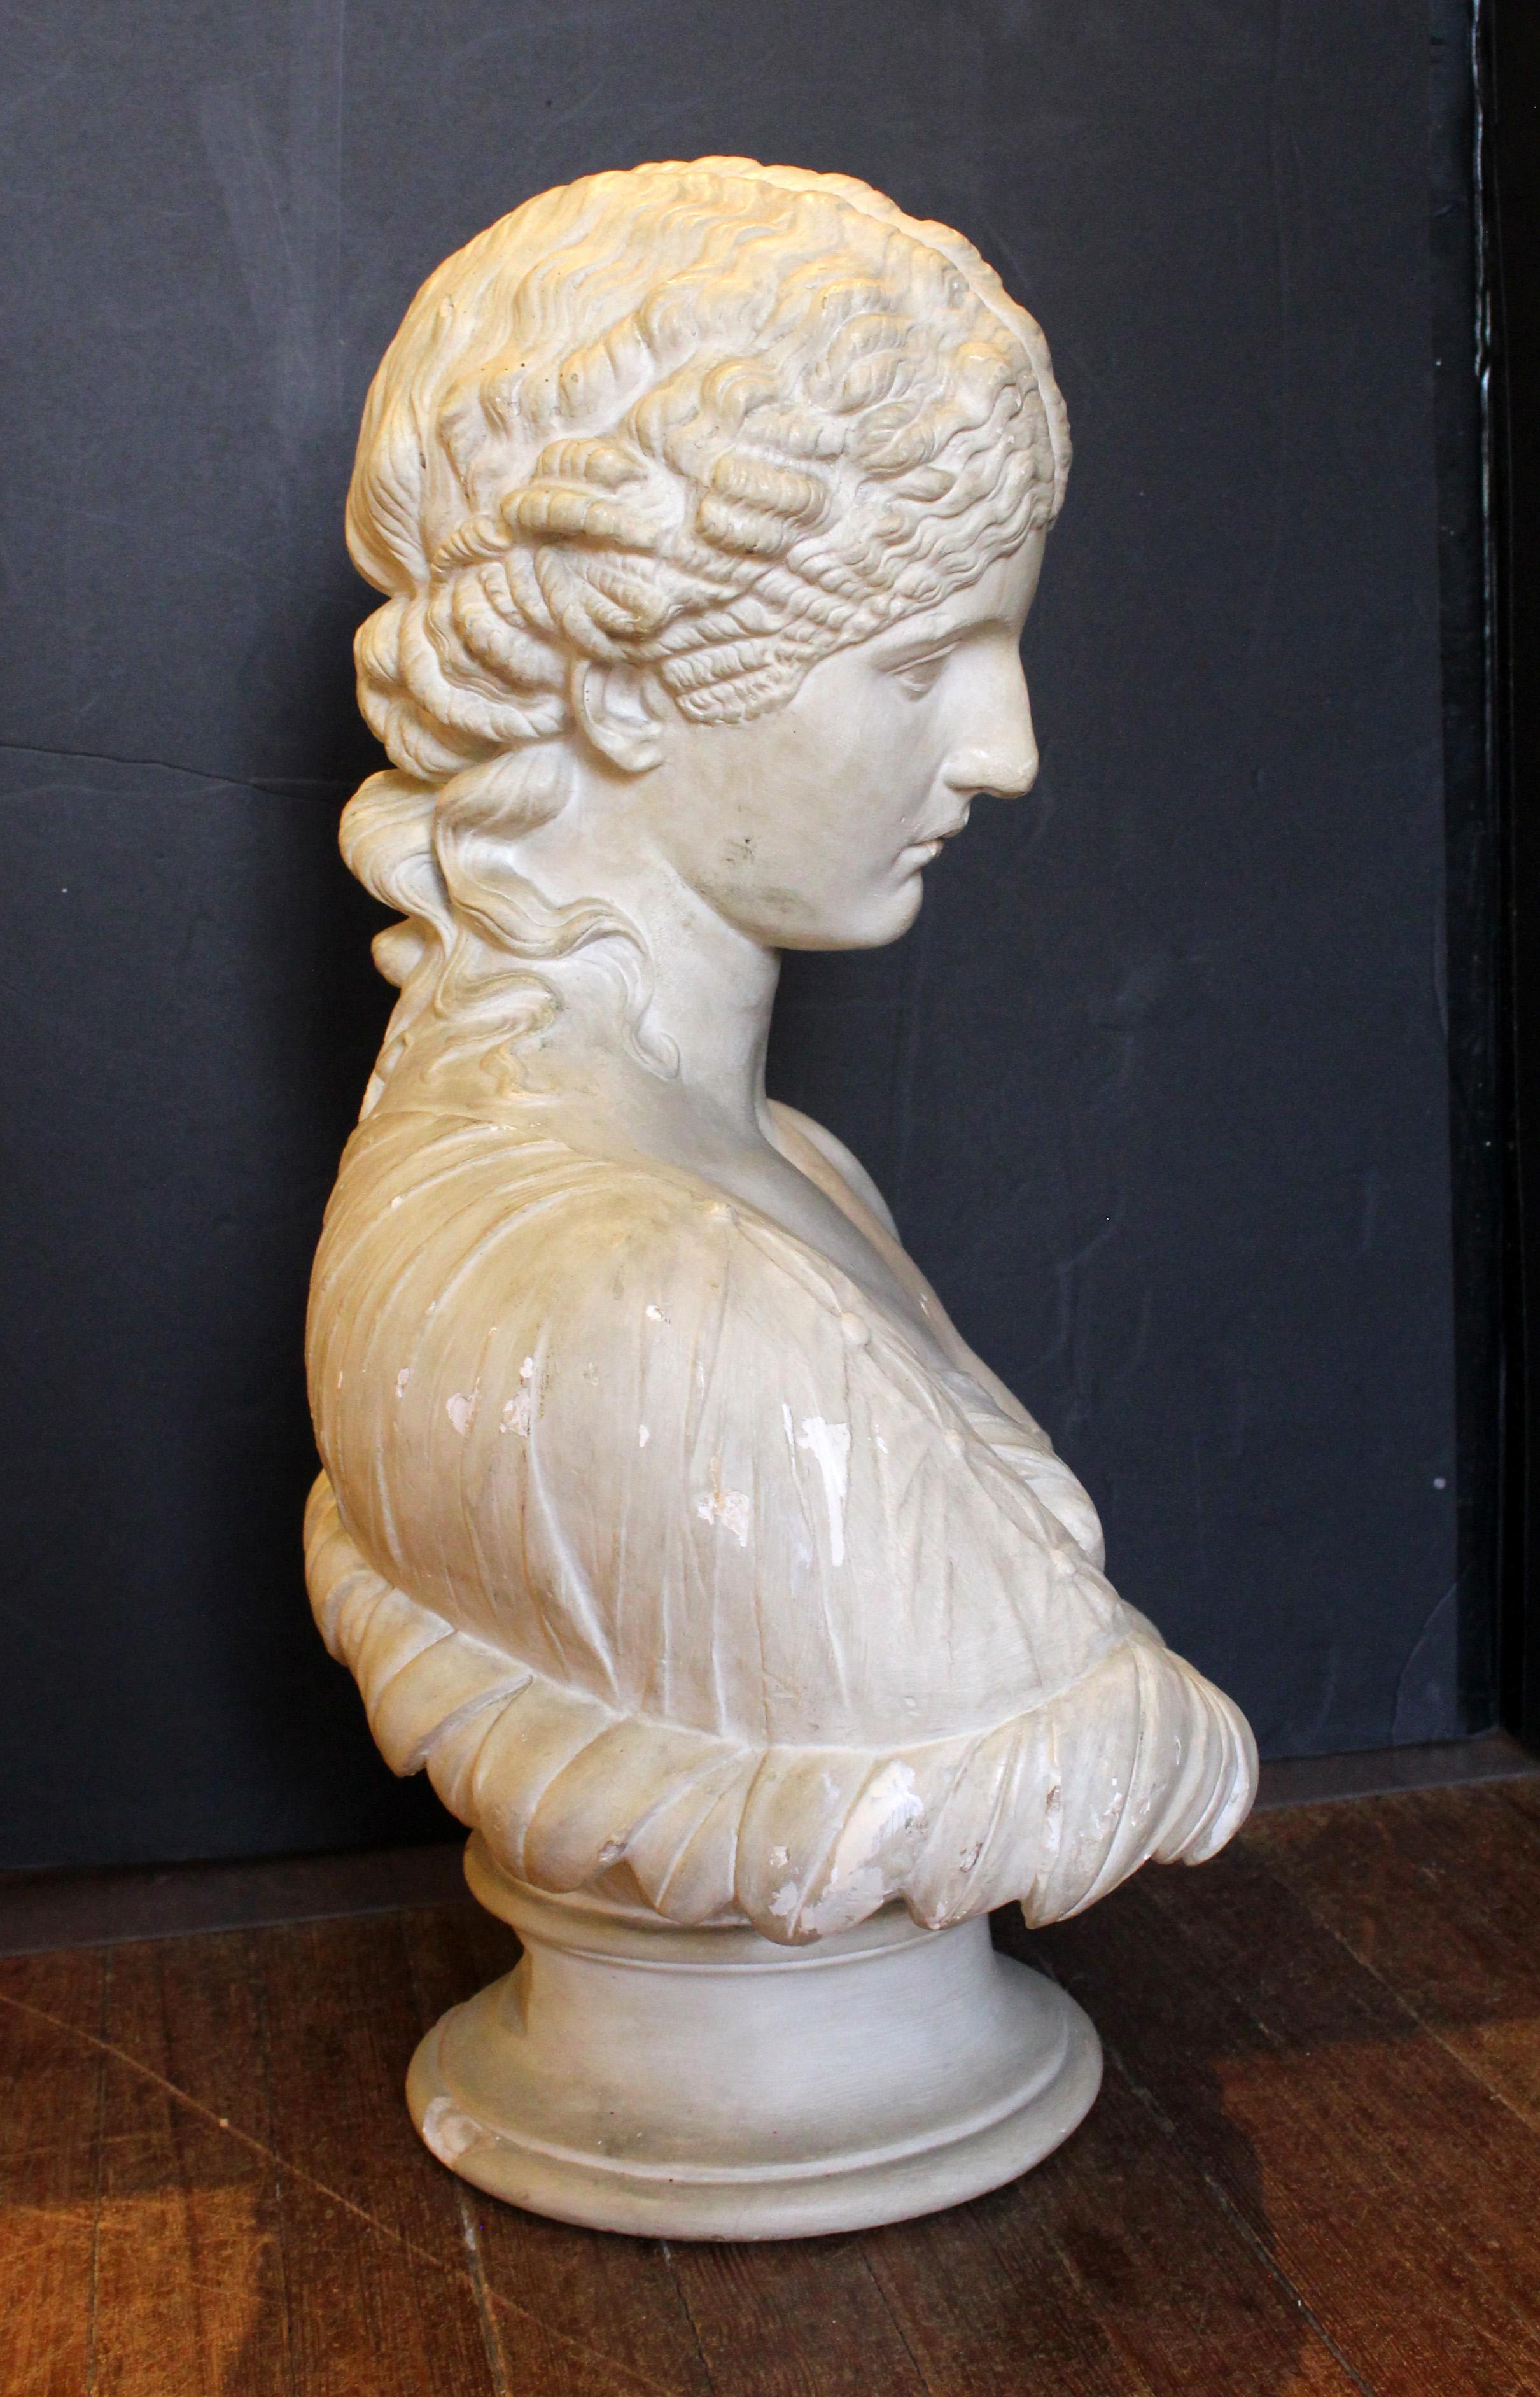 Gipsbüste aus Kunstmarmor von Antonia, hergestellt von D. Brucciani & Co. London, Ende des 19. Jahrhunderts. Eine Frau, die aus einem Blattkelch hervorkommt, stellt die Nymphe Clytie dar. Eine Kopie des Marmorbildes aus dem Britischen Museum in Rom